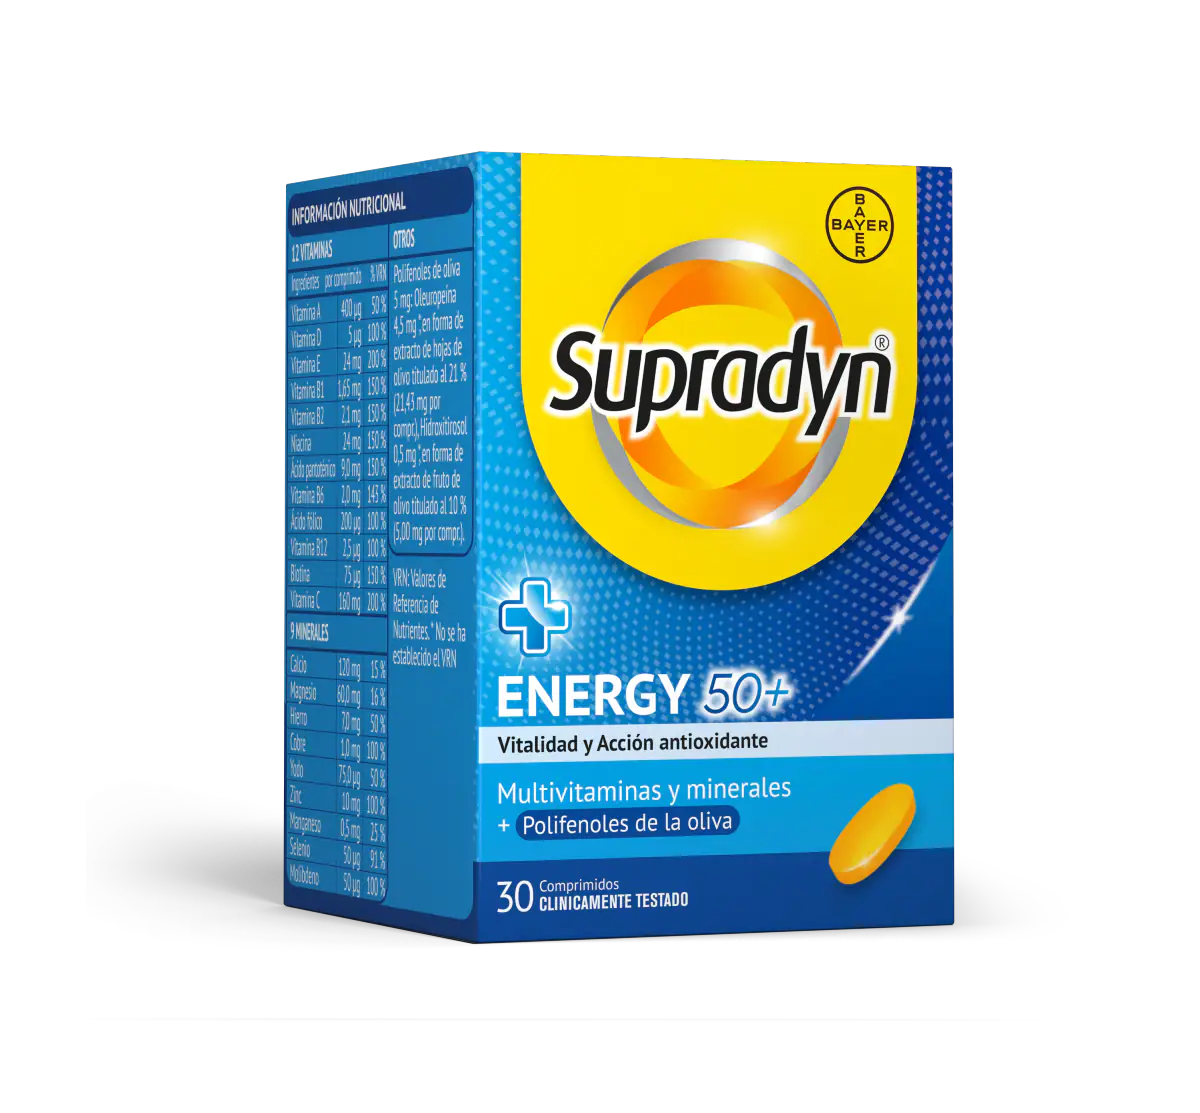 Supradyn®  Energy 50+ Con antioxidantes es un multivitamínico específico para las personas a partir de 50 años que ayuda a mantener la energía y vitalidad física y mental además de proteger a las células del daño oxidativo.